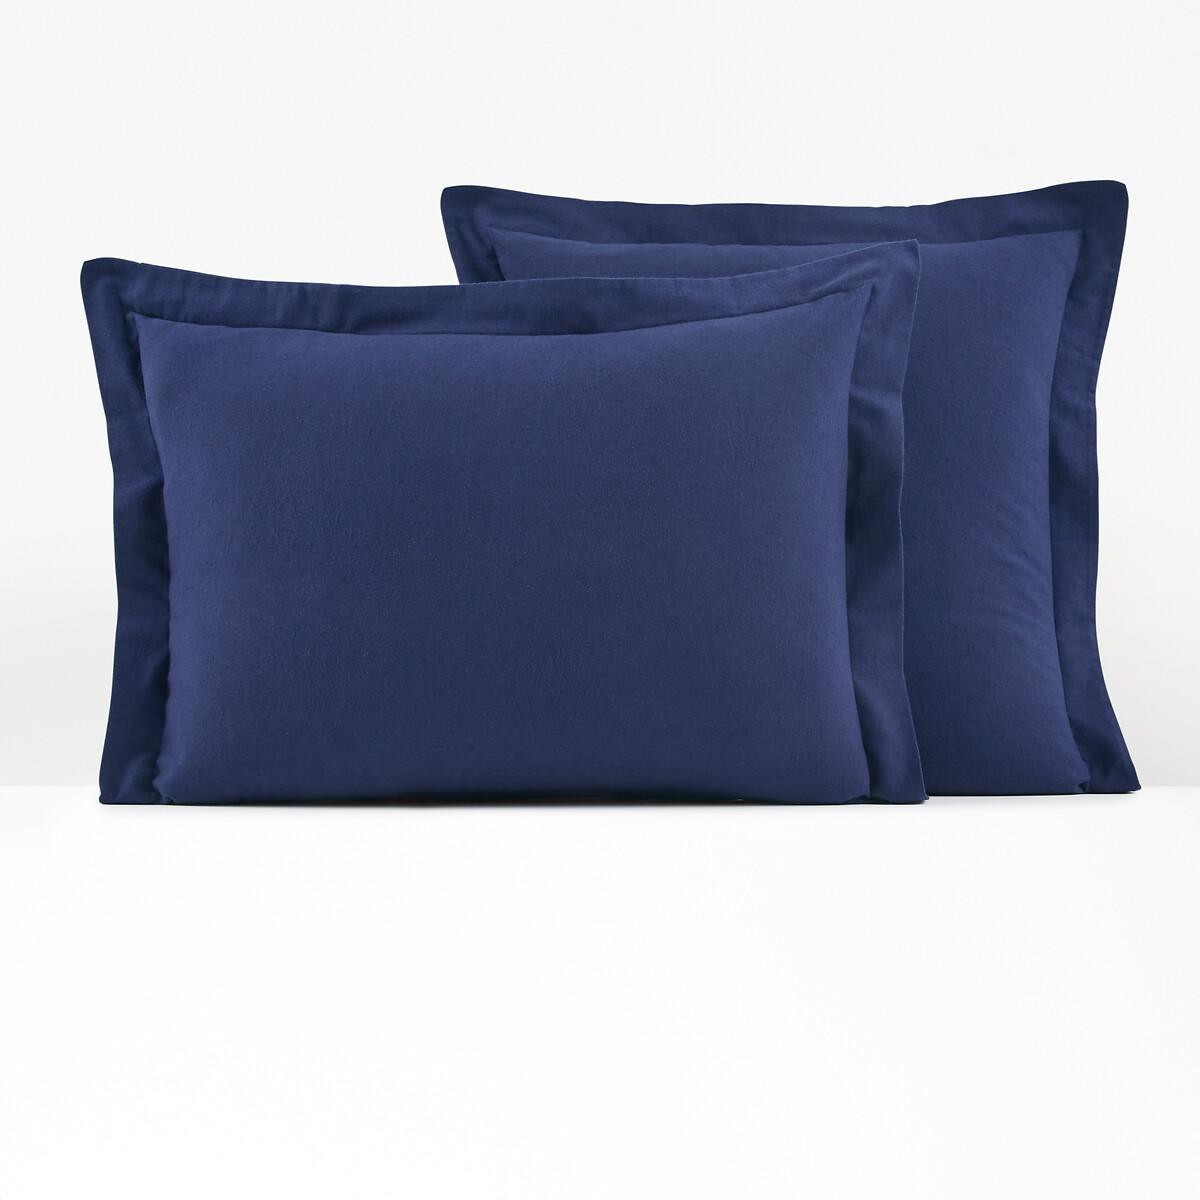 Чехол На подушку или на валик из фланели Scenario 64 x 64 см синий